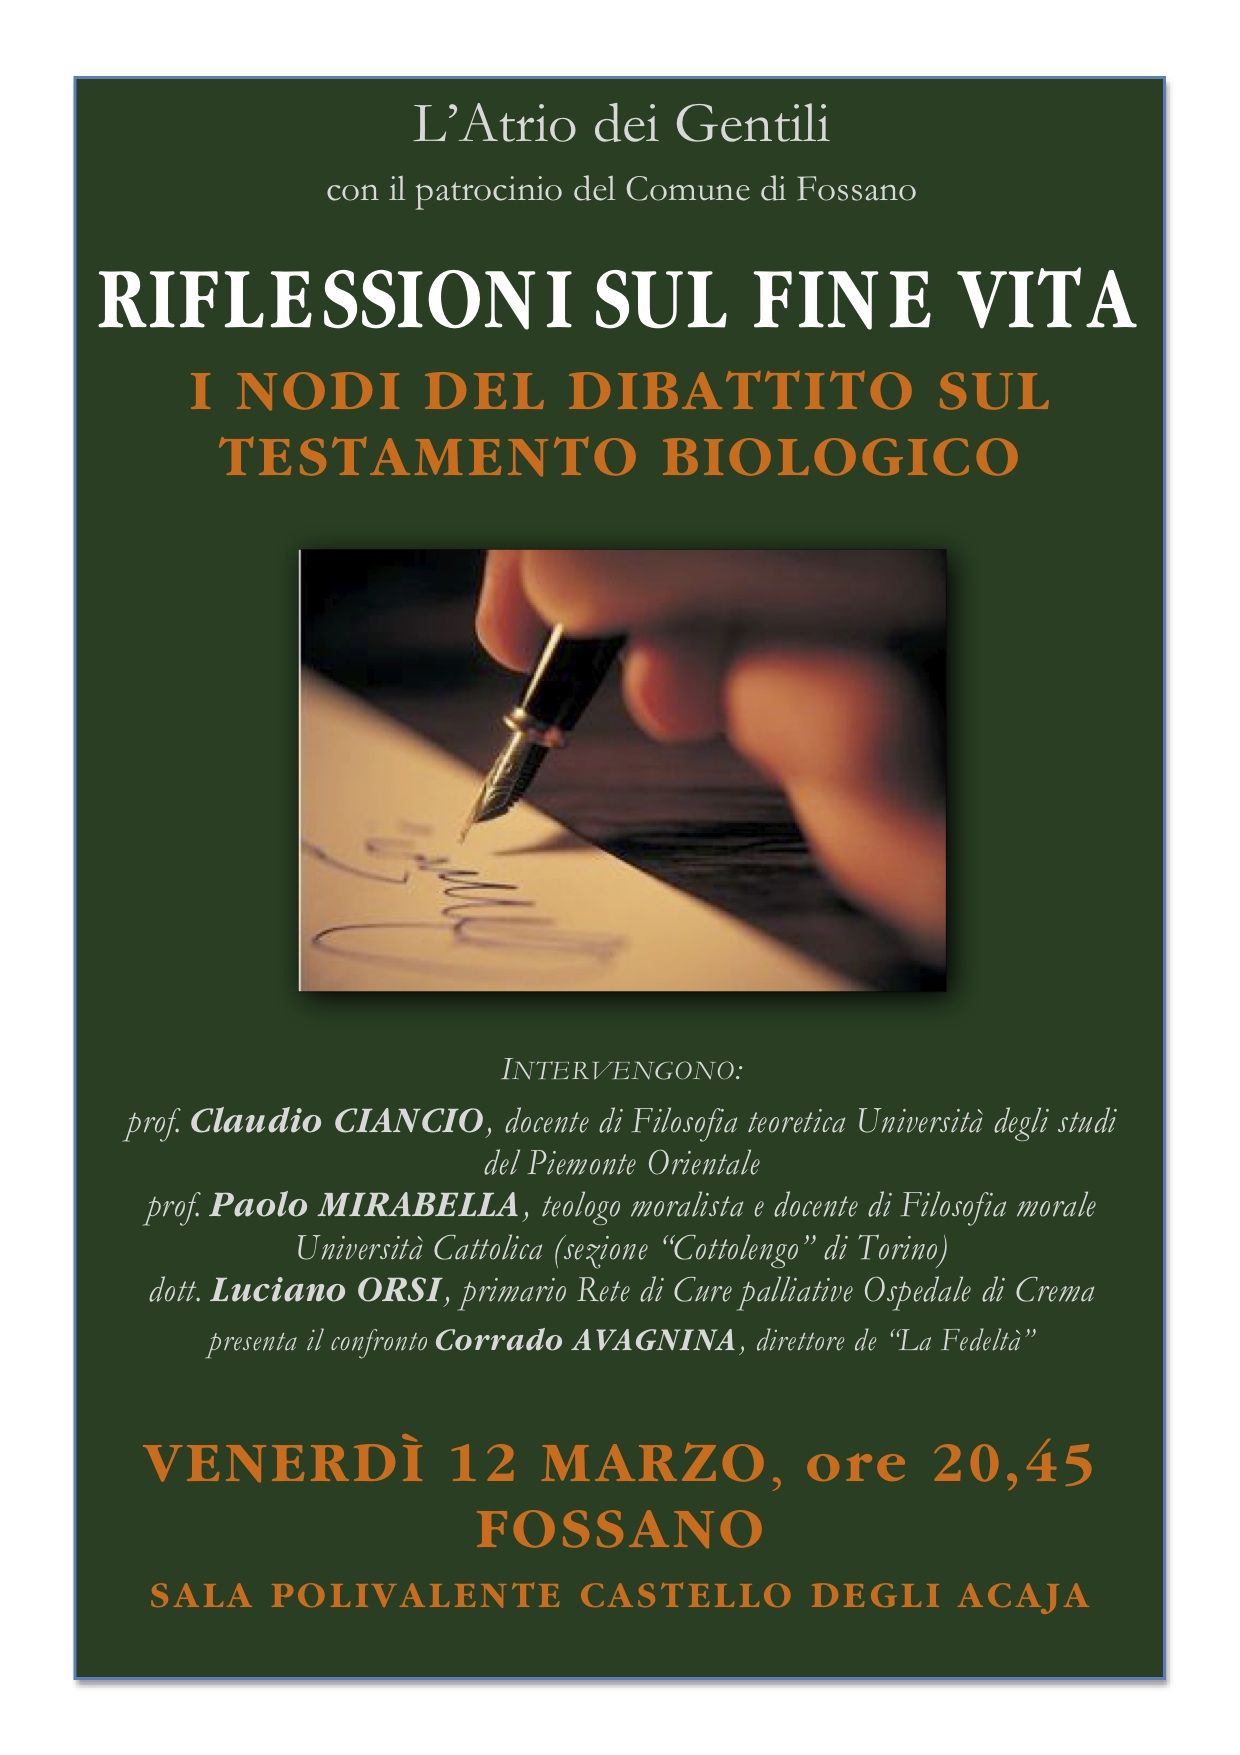 Il dibattito sul Testamento biologico: il 12 marzo (ore 20,45) tavola rotonda a Fossano